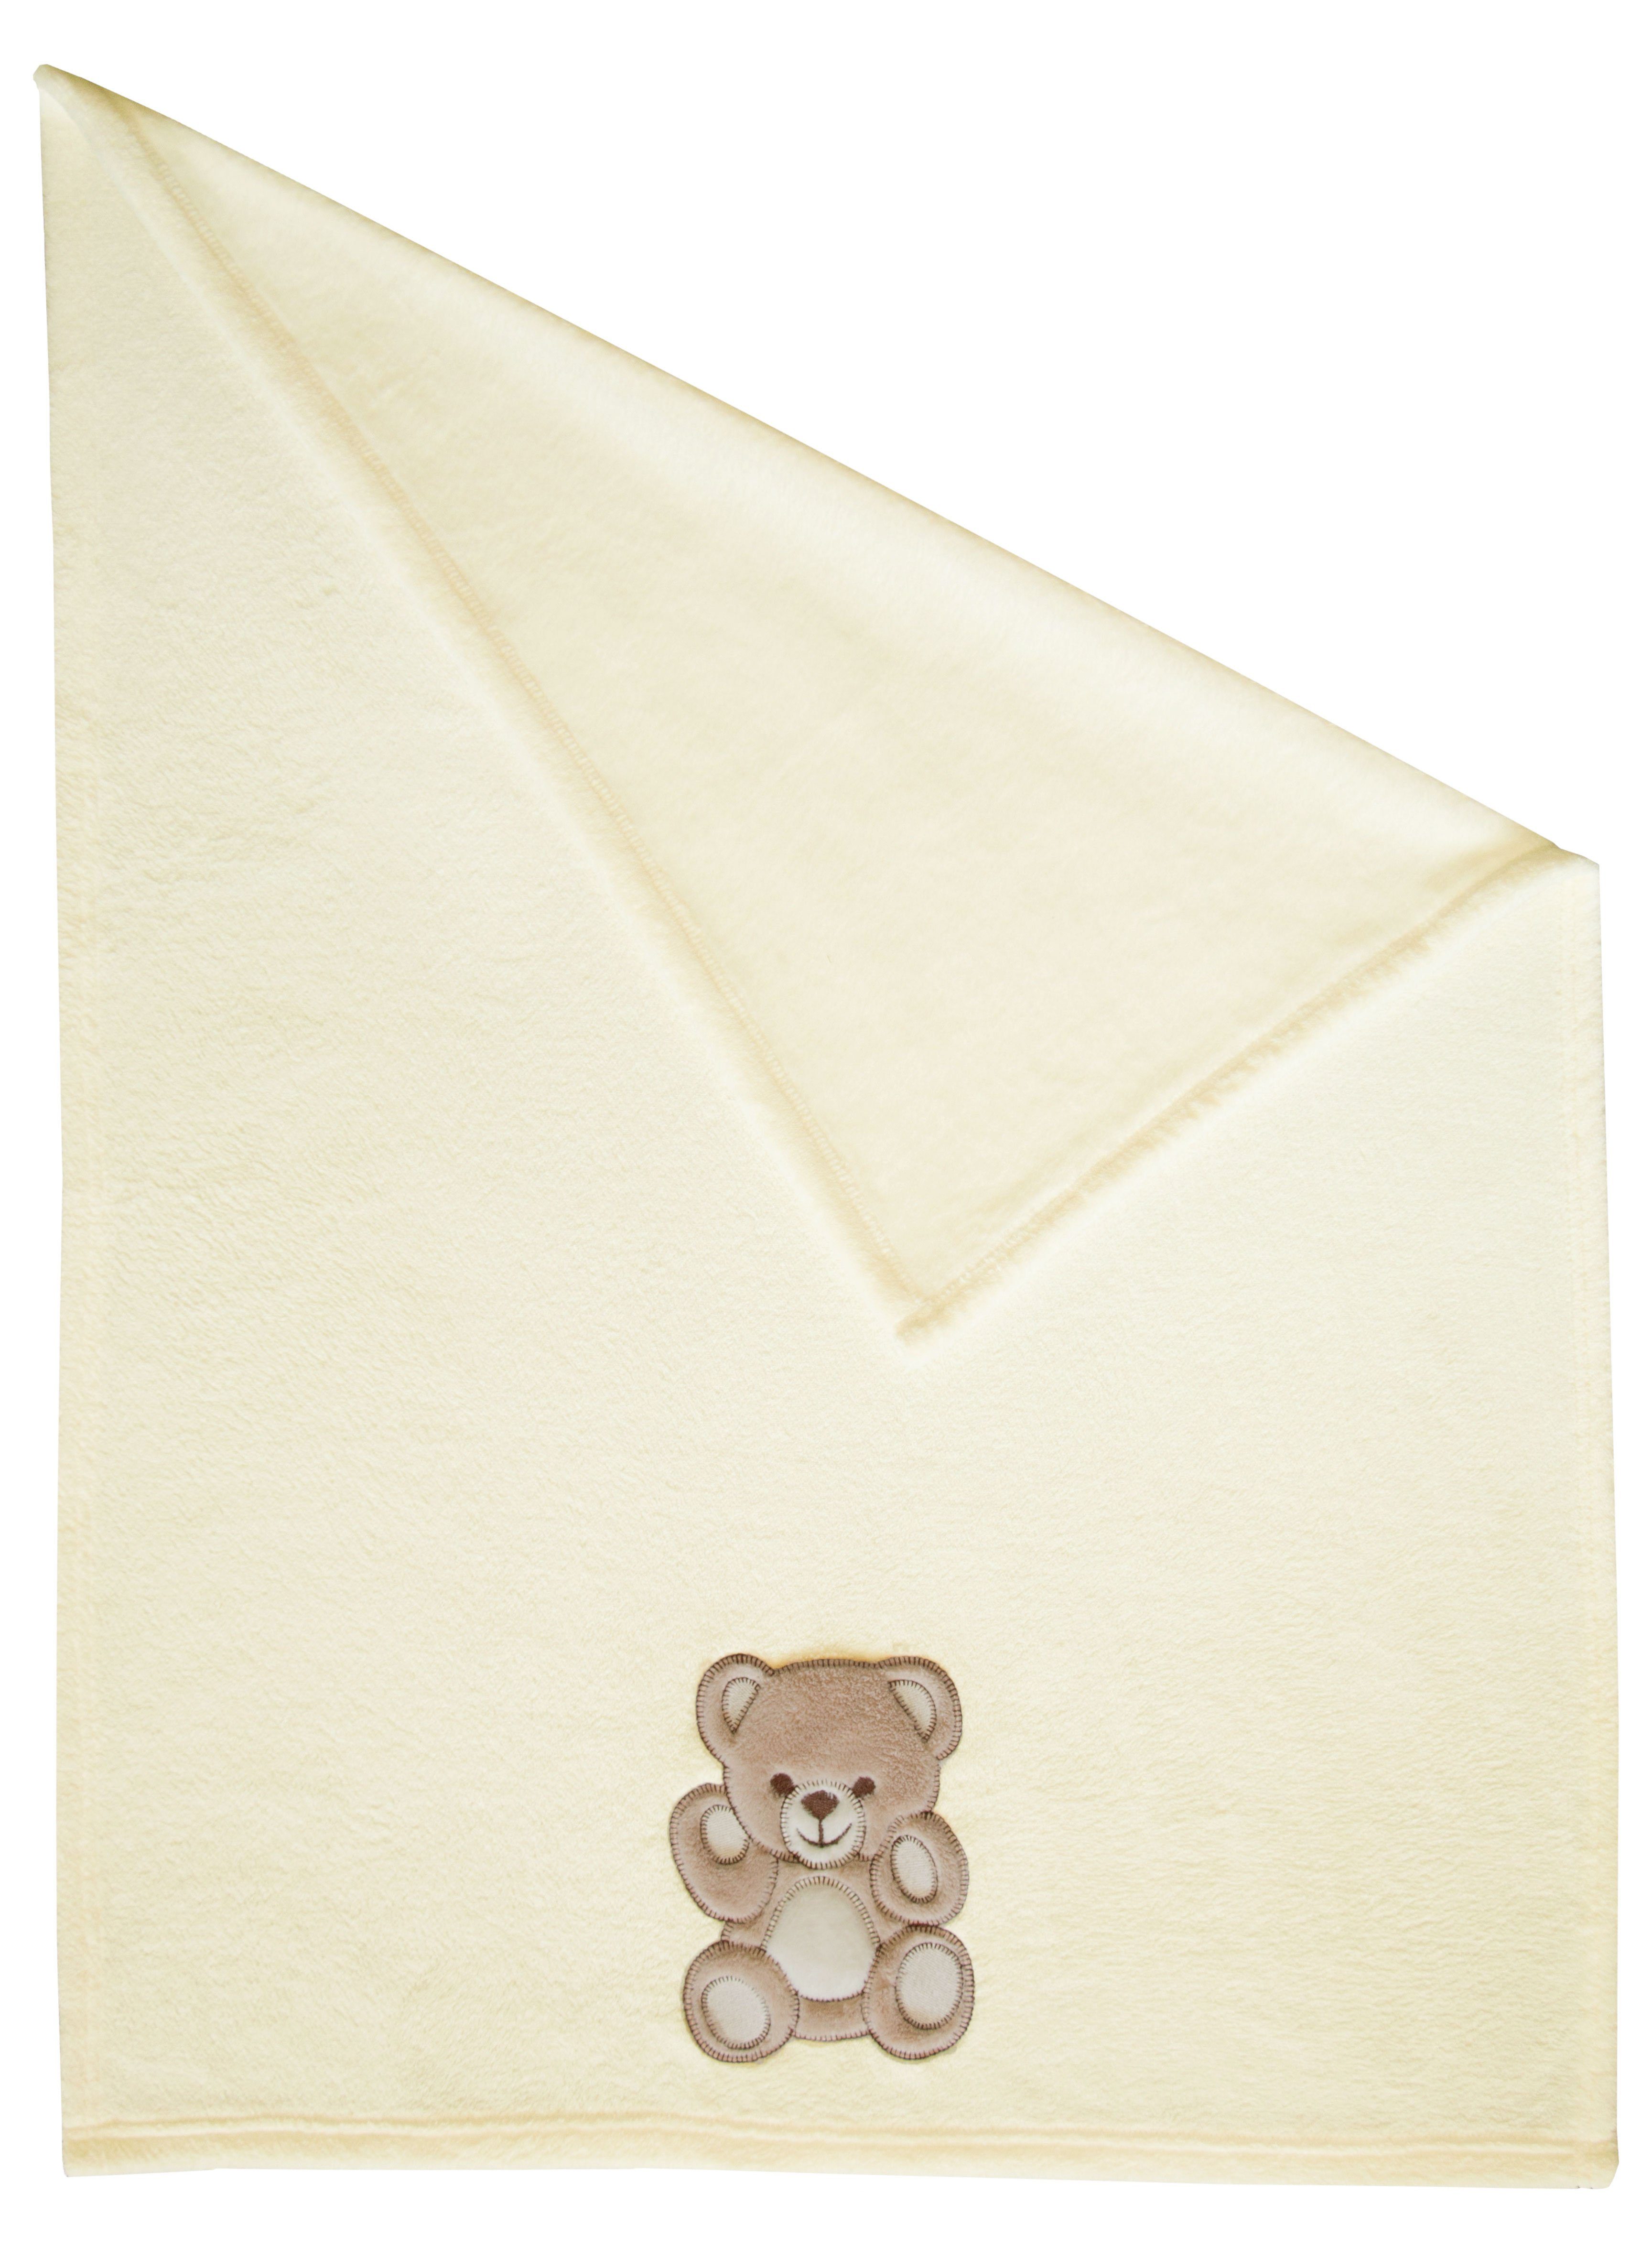 Babydecke, ZOLLNER, 3D-Teddyaufnäher, 75 x 100 cm, 100% Polyester